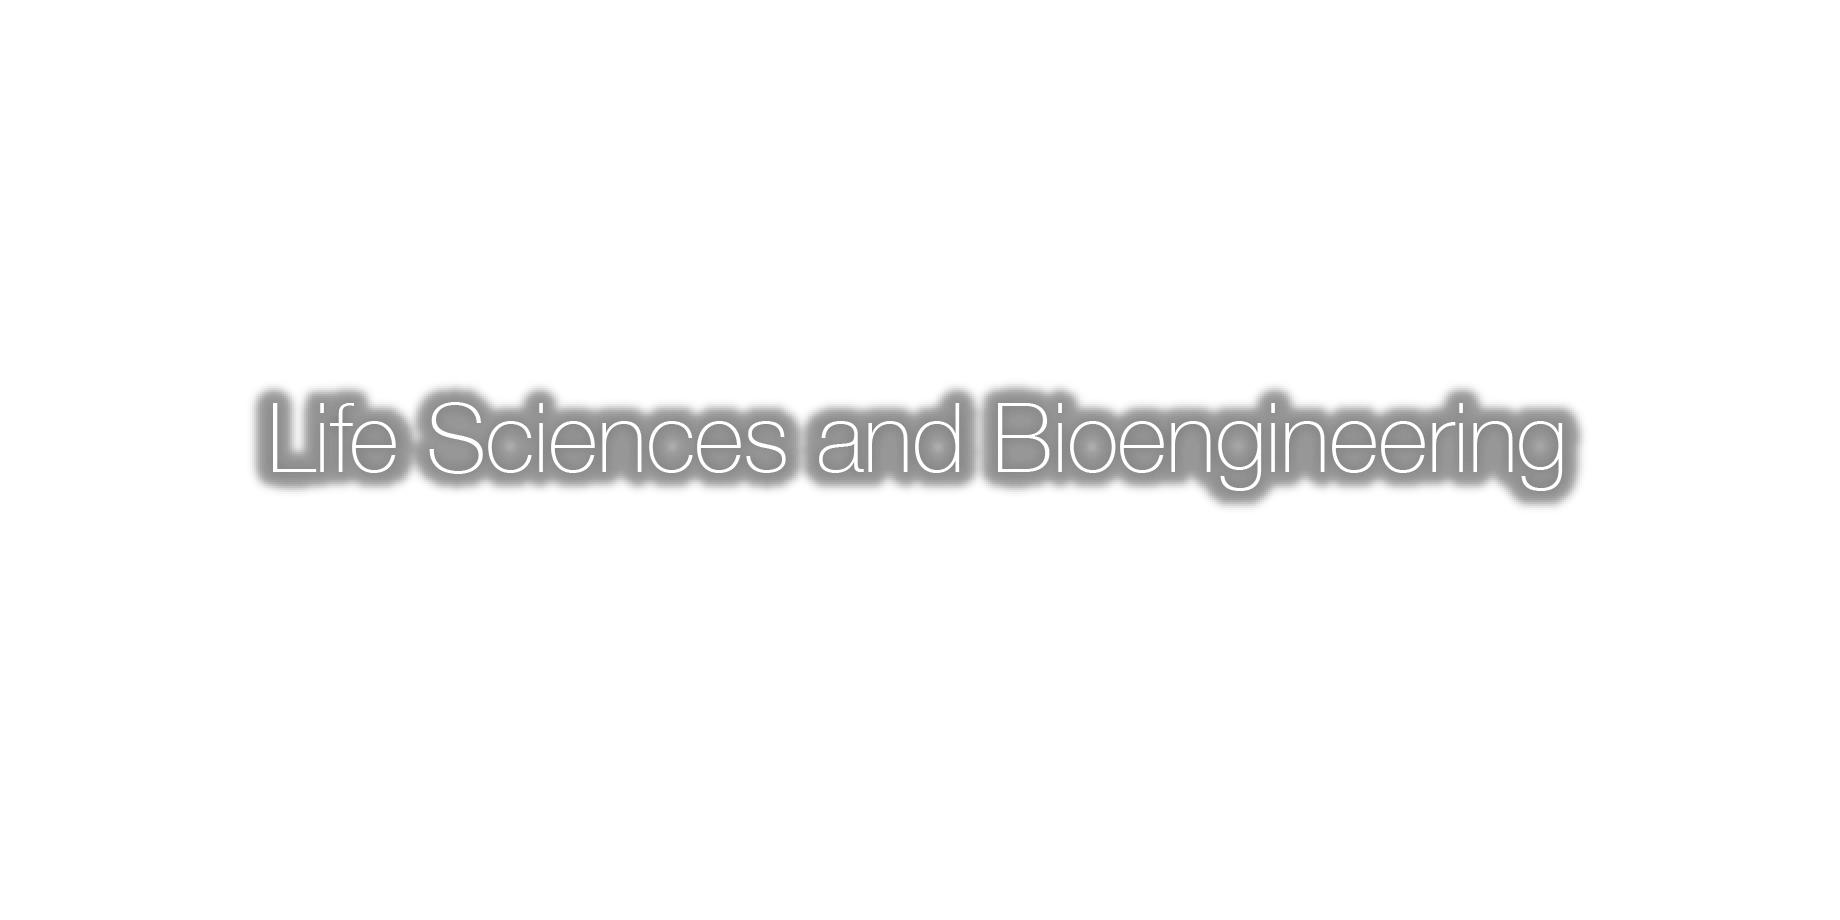 Life Sciences and Bioengineering